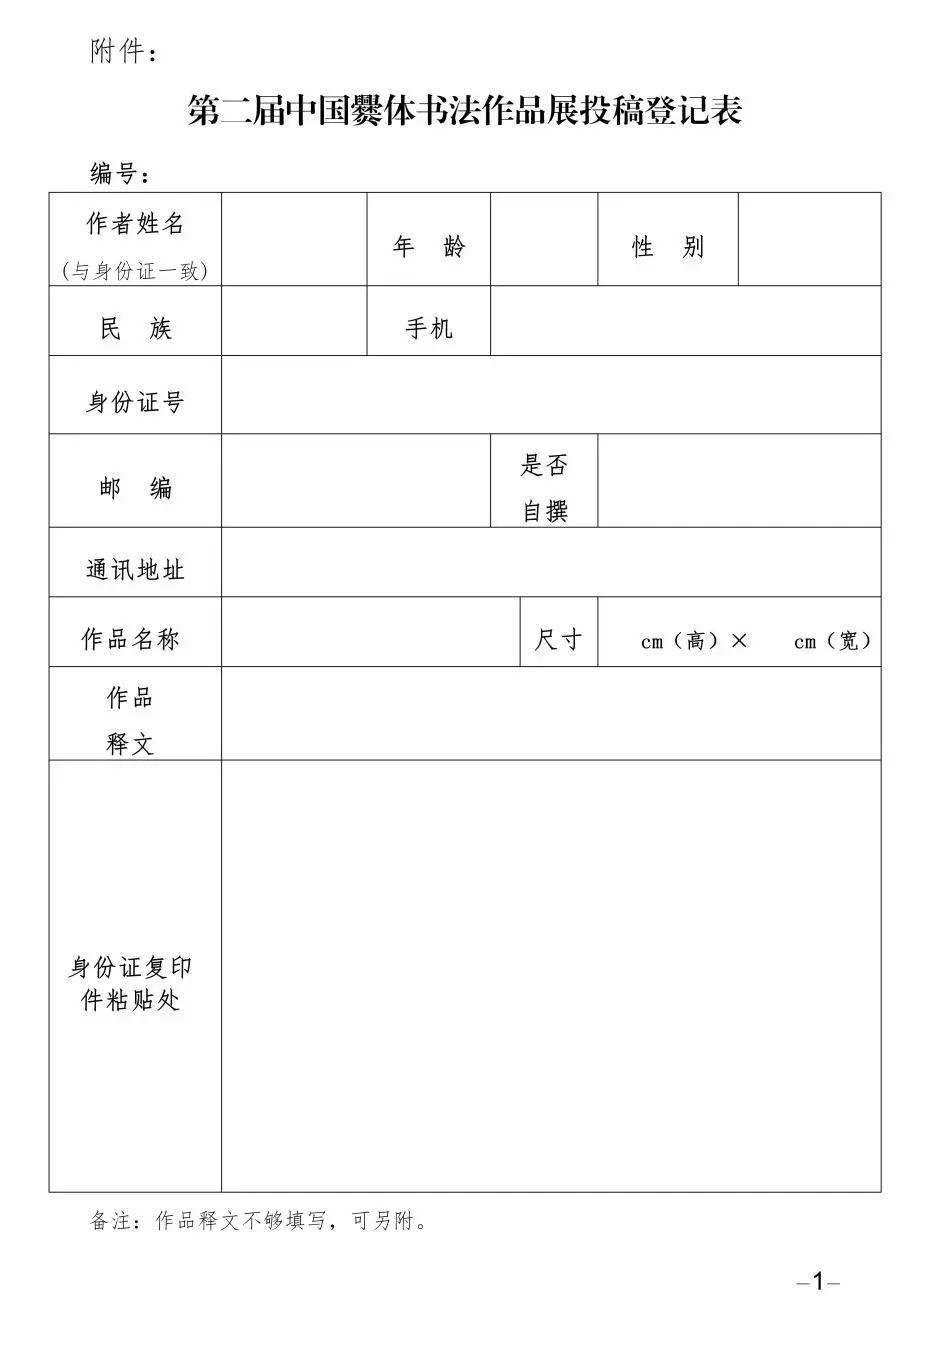 第二届中国爨体书法作品展系列活动作品及论文征稿启事(2023年12月31日截稿)